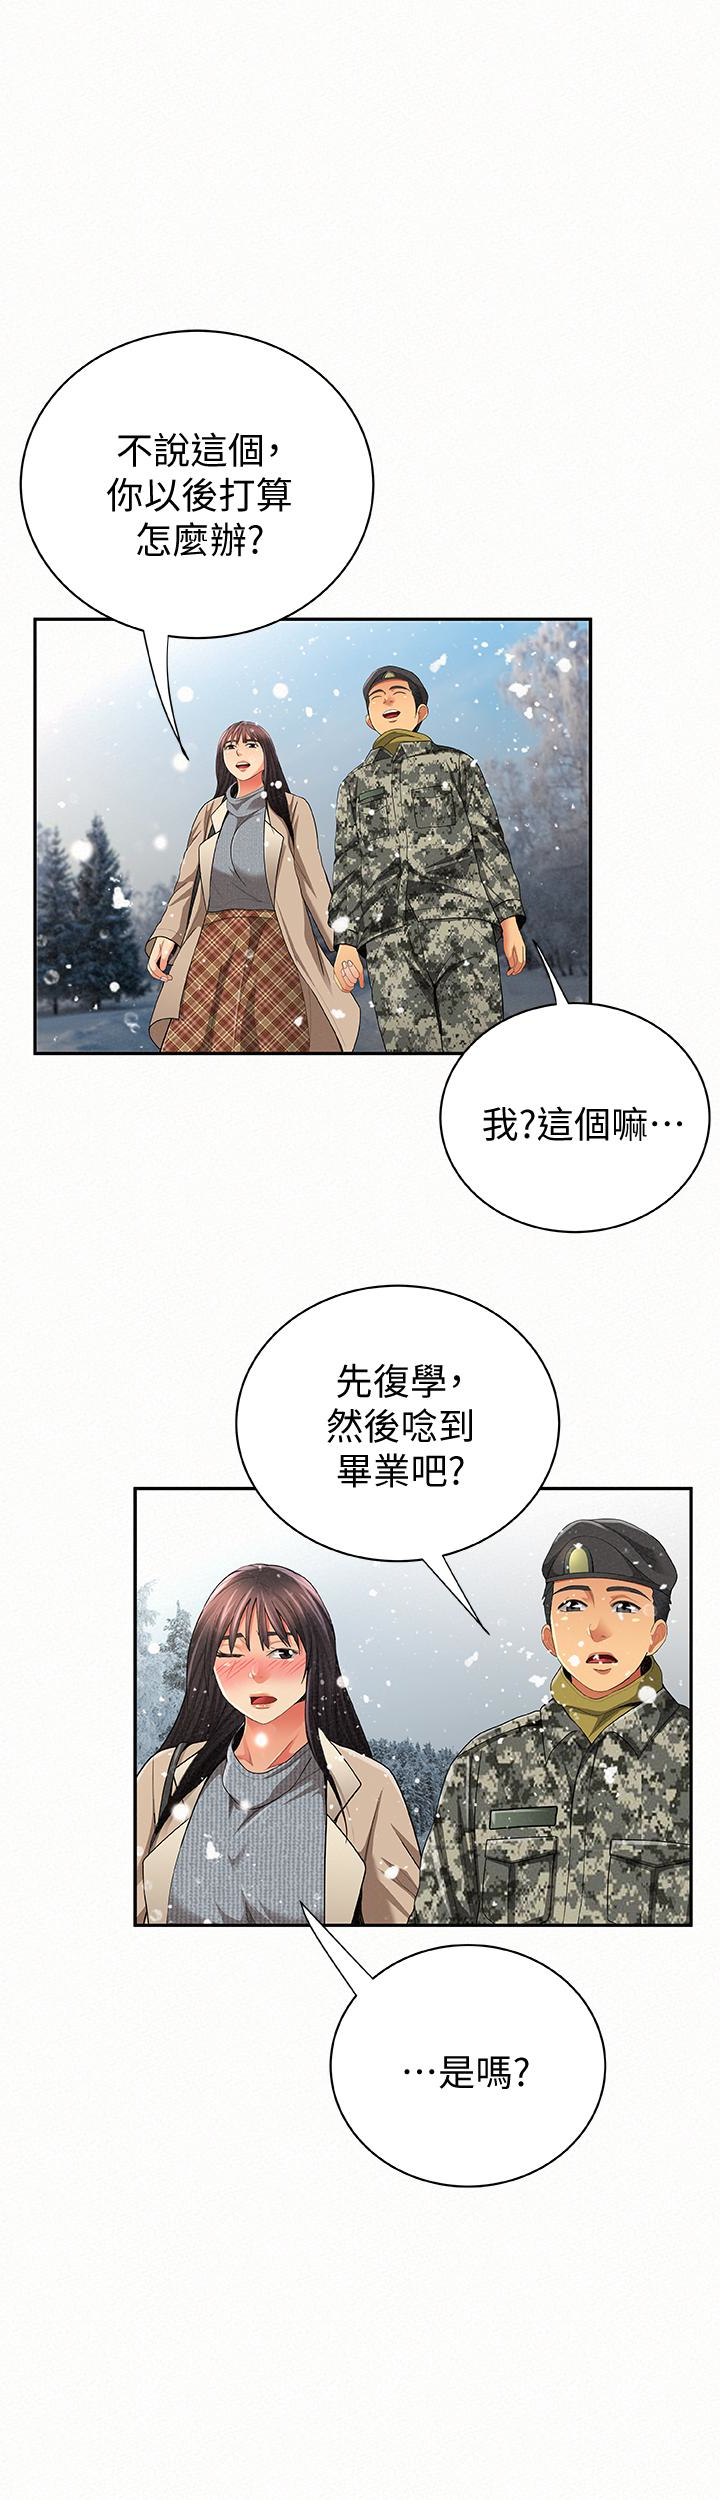 报告夫人  最终话-漫长军人生活的尽头 漫画图片37.jpg